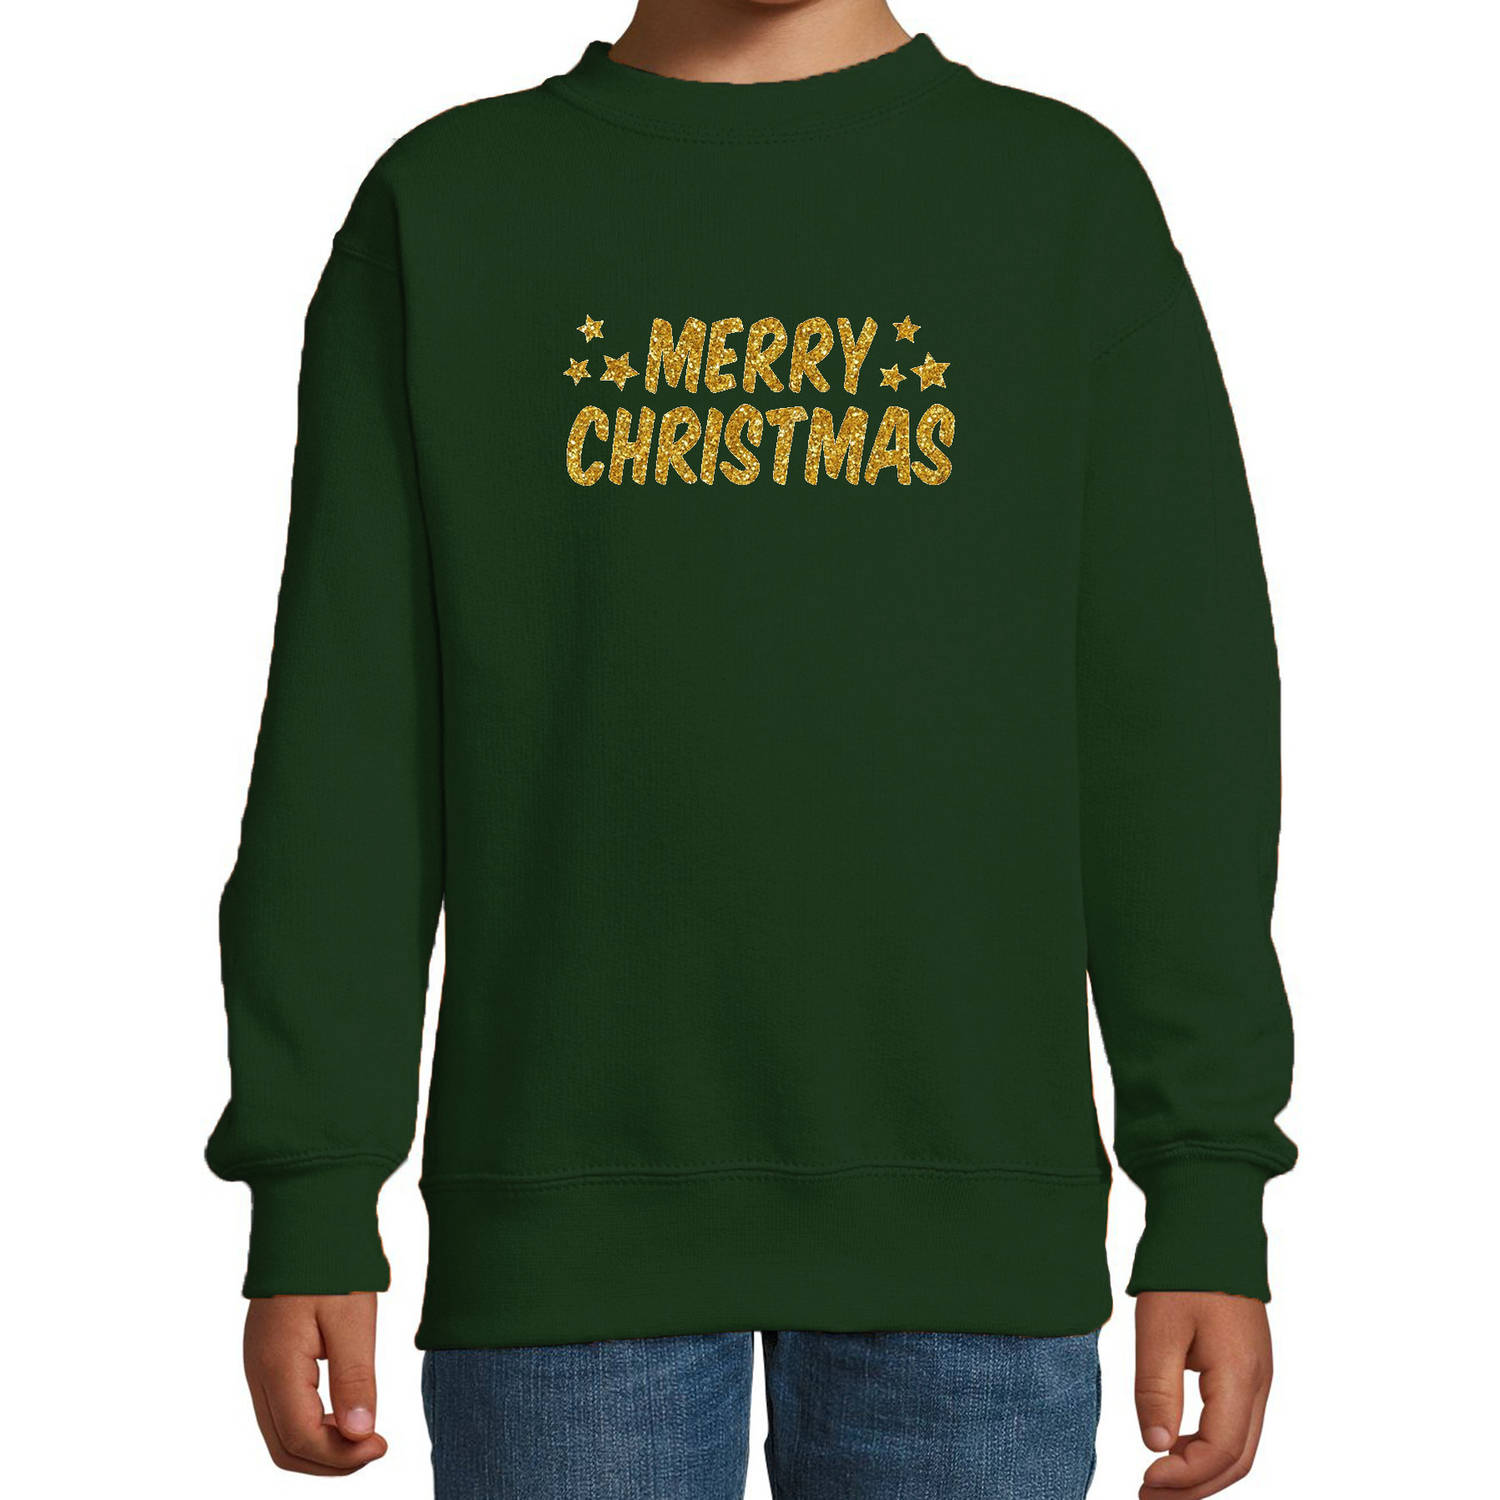 Merry Christmas Kerst sweater / trui groen voor kinderen met gouden glitter bedrukking 3-4 jaar (98/104) - kerst truien